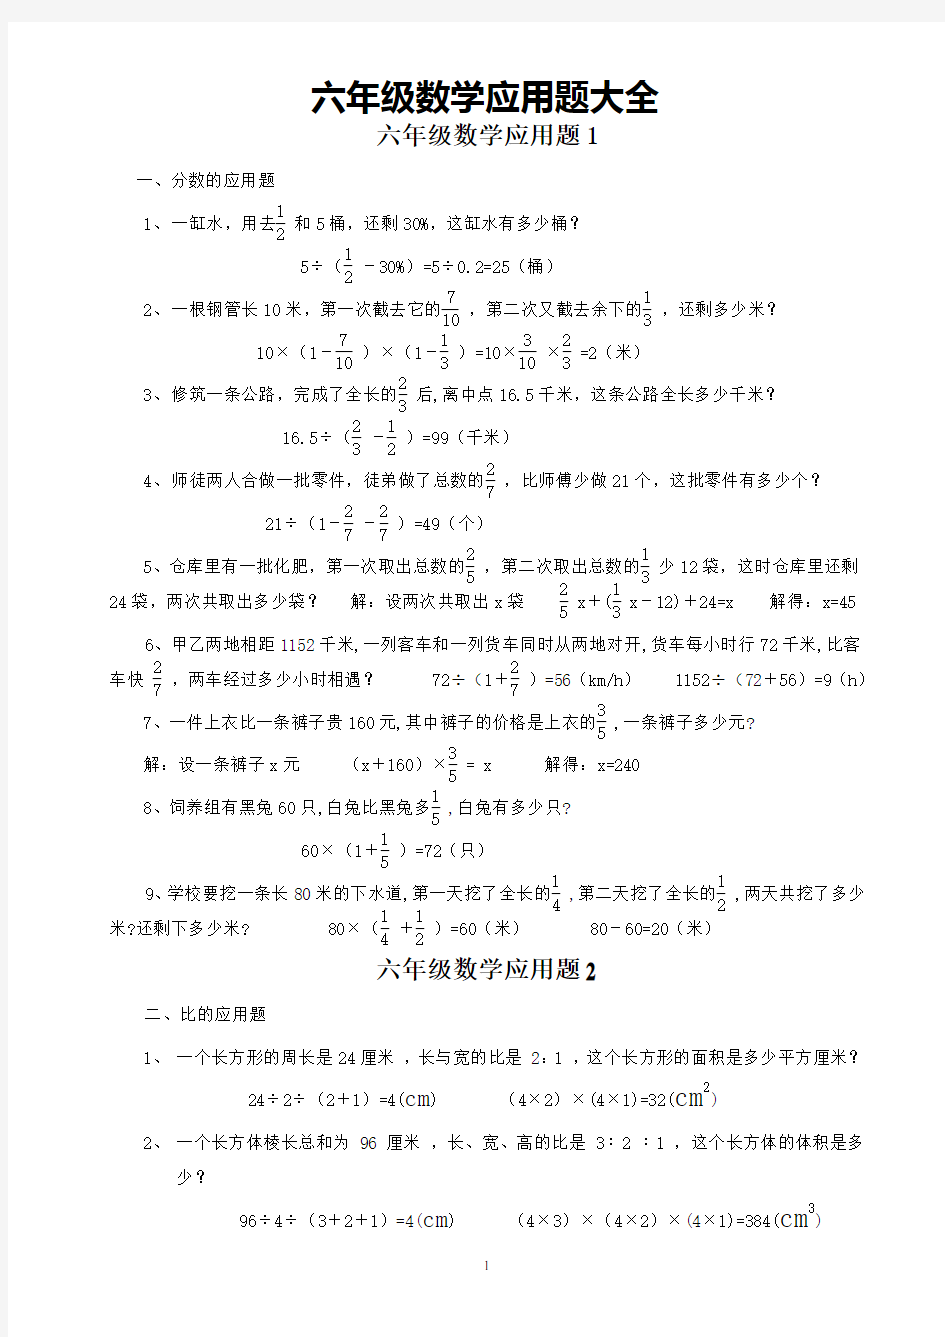 【深圳市】小学六年级数学应用题大全(附答案)